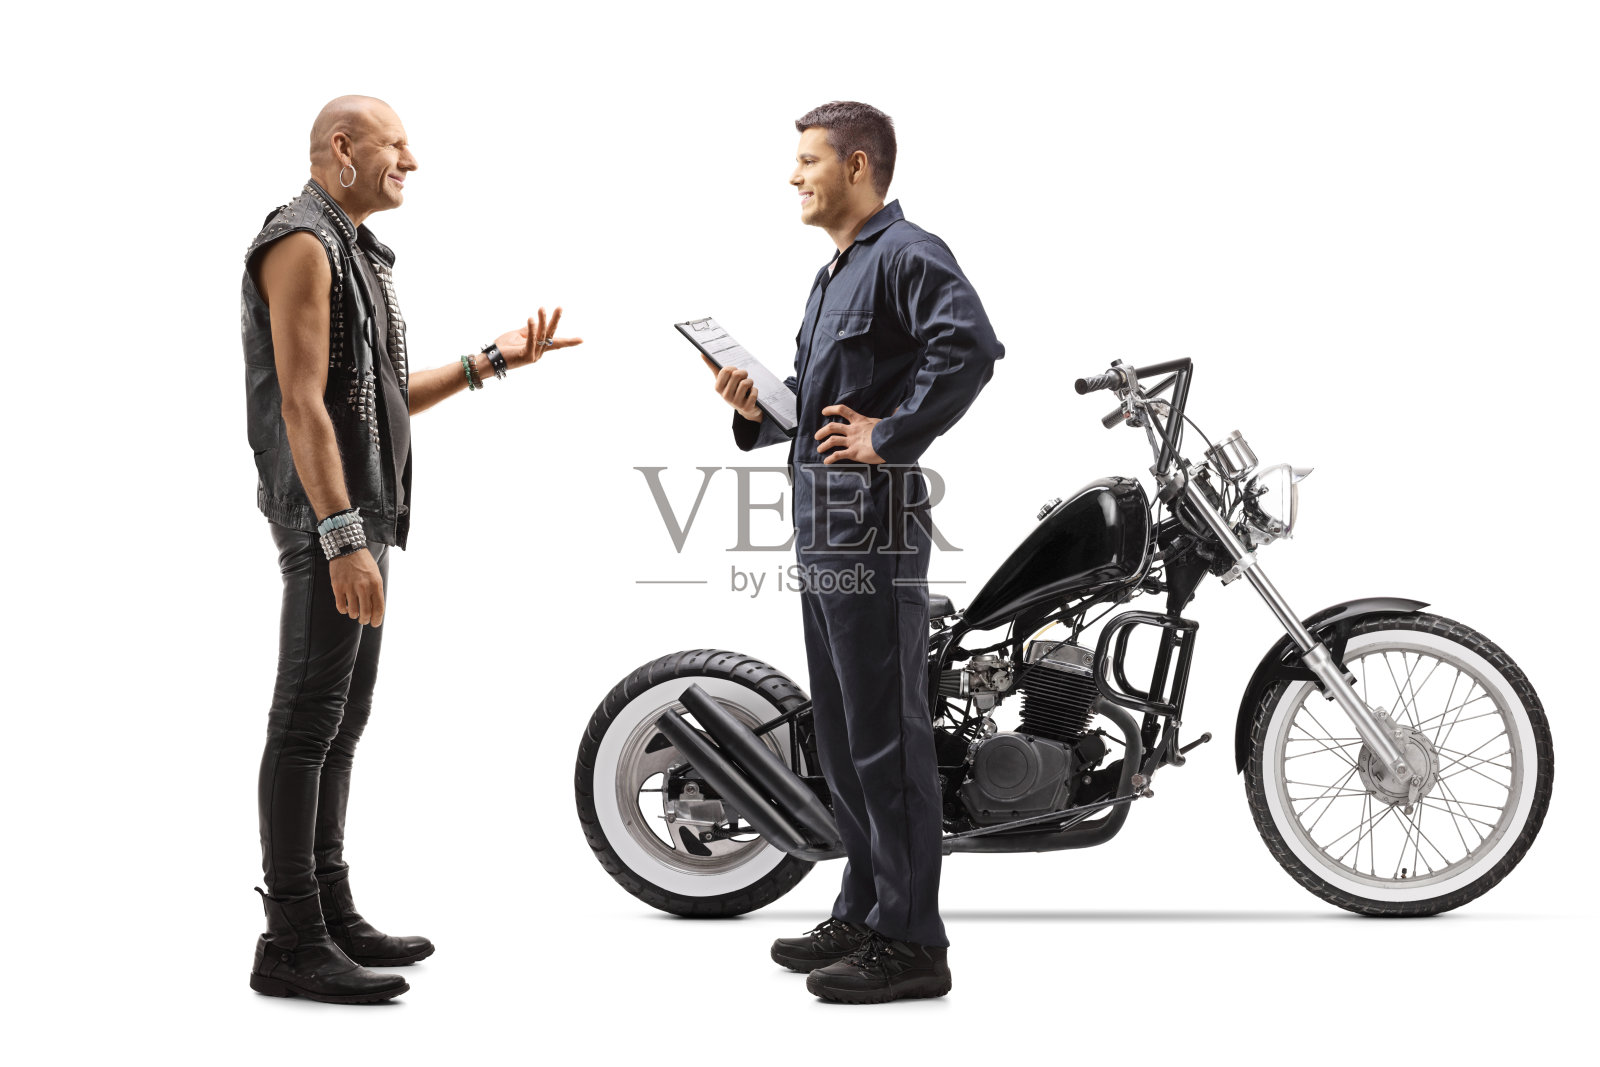 摩托车修理工和一个骑摩托的人说话照片摄影图片